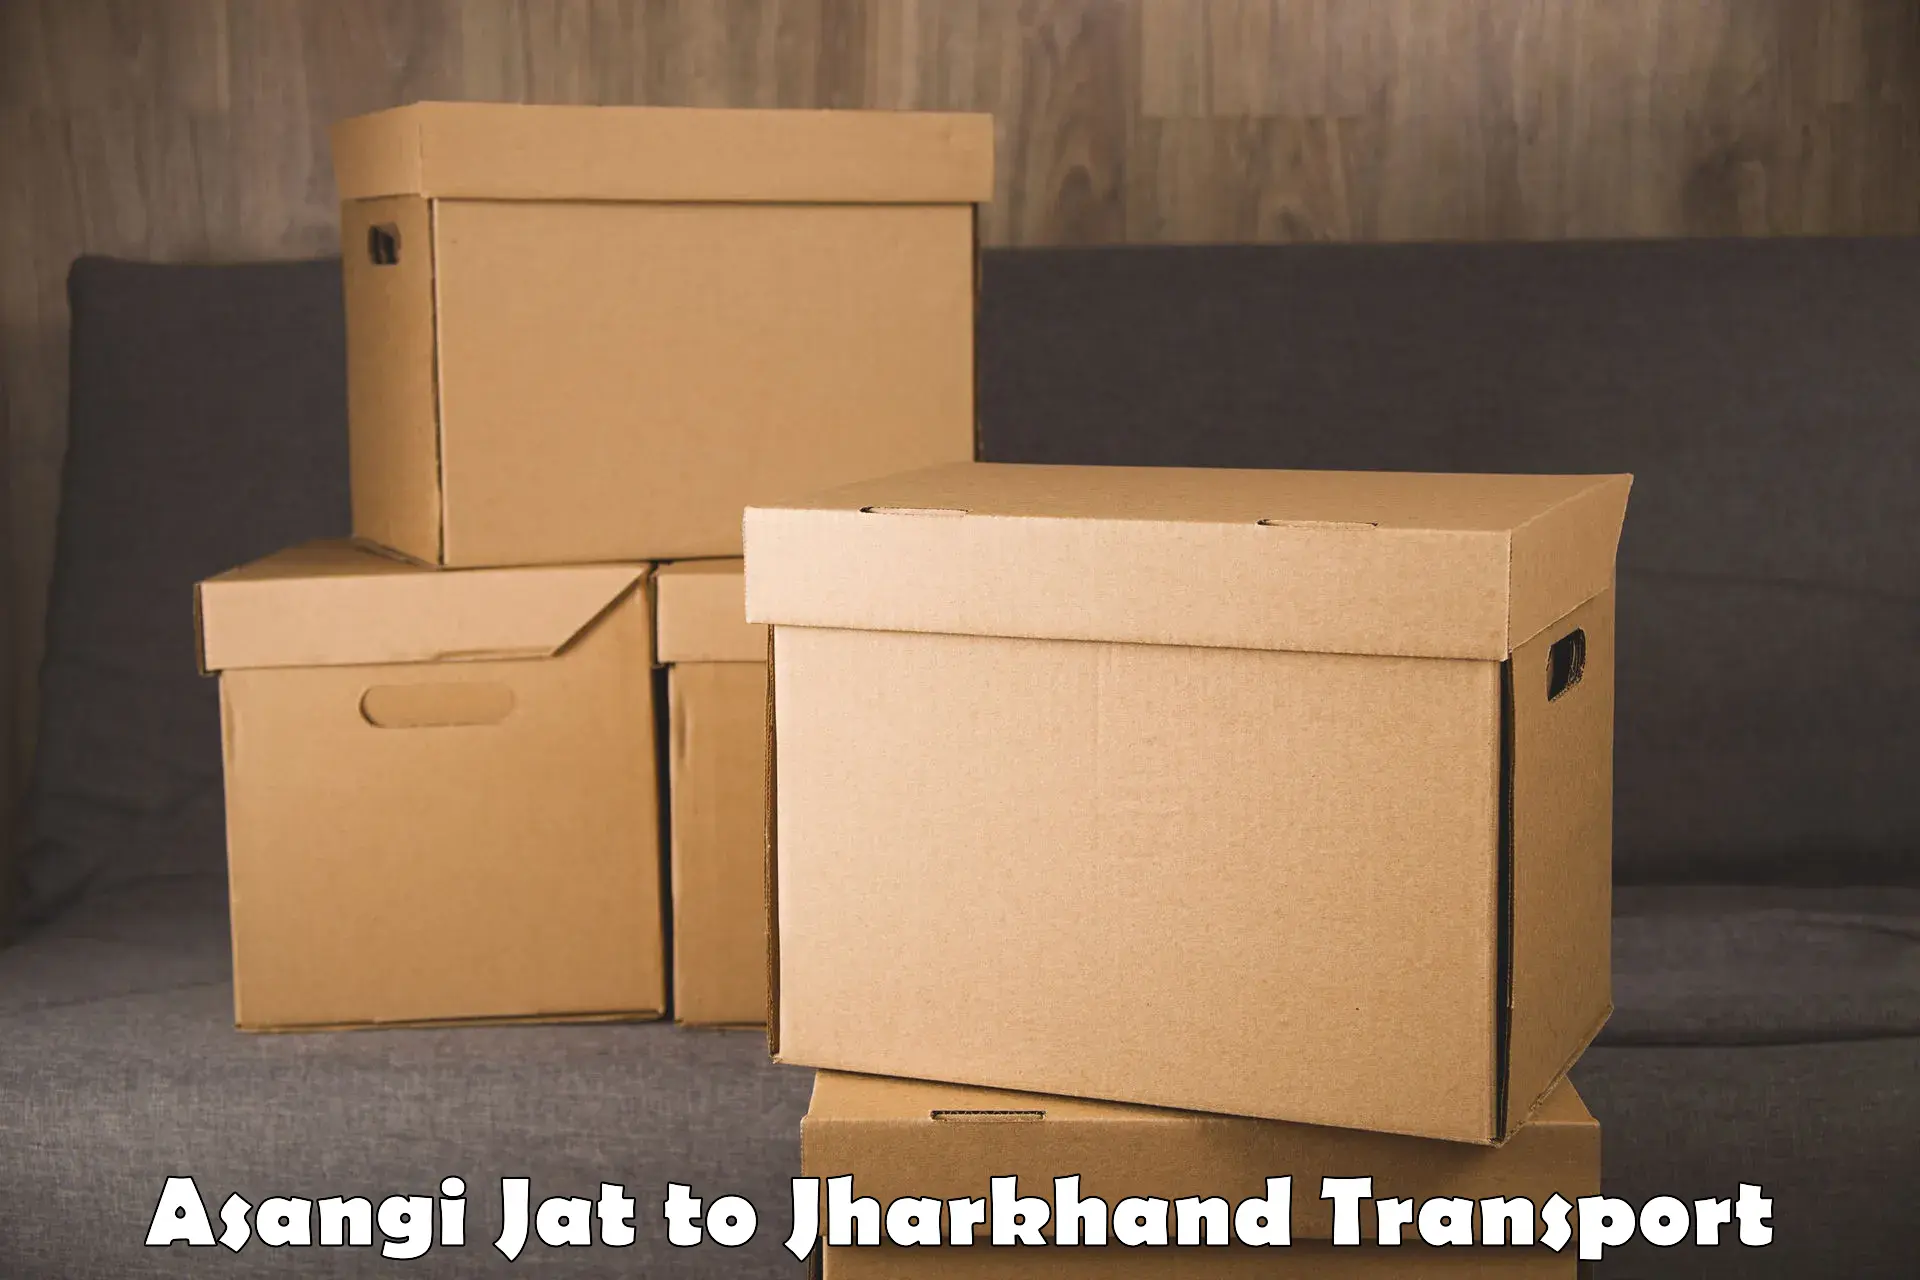 Land transport services in Asangi Jat to Jamshedpur